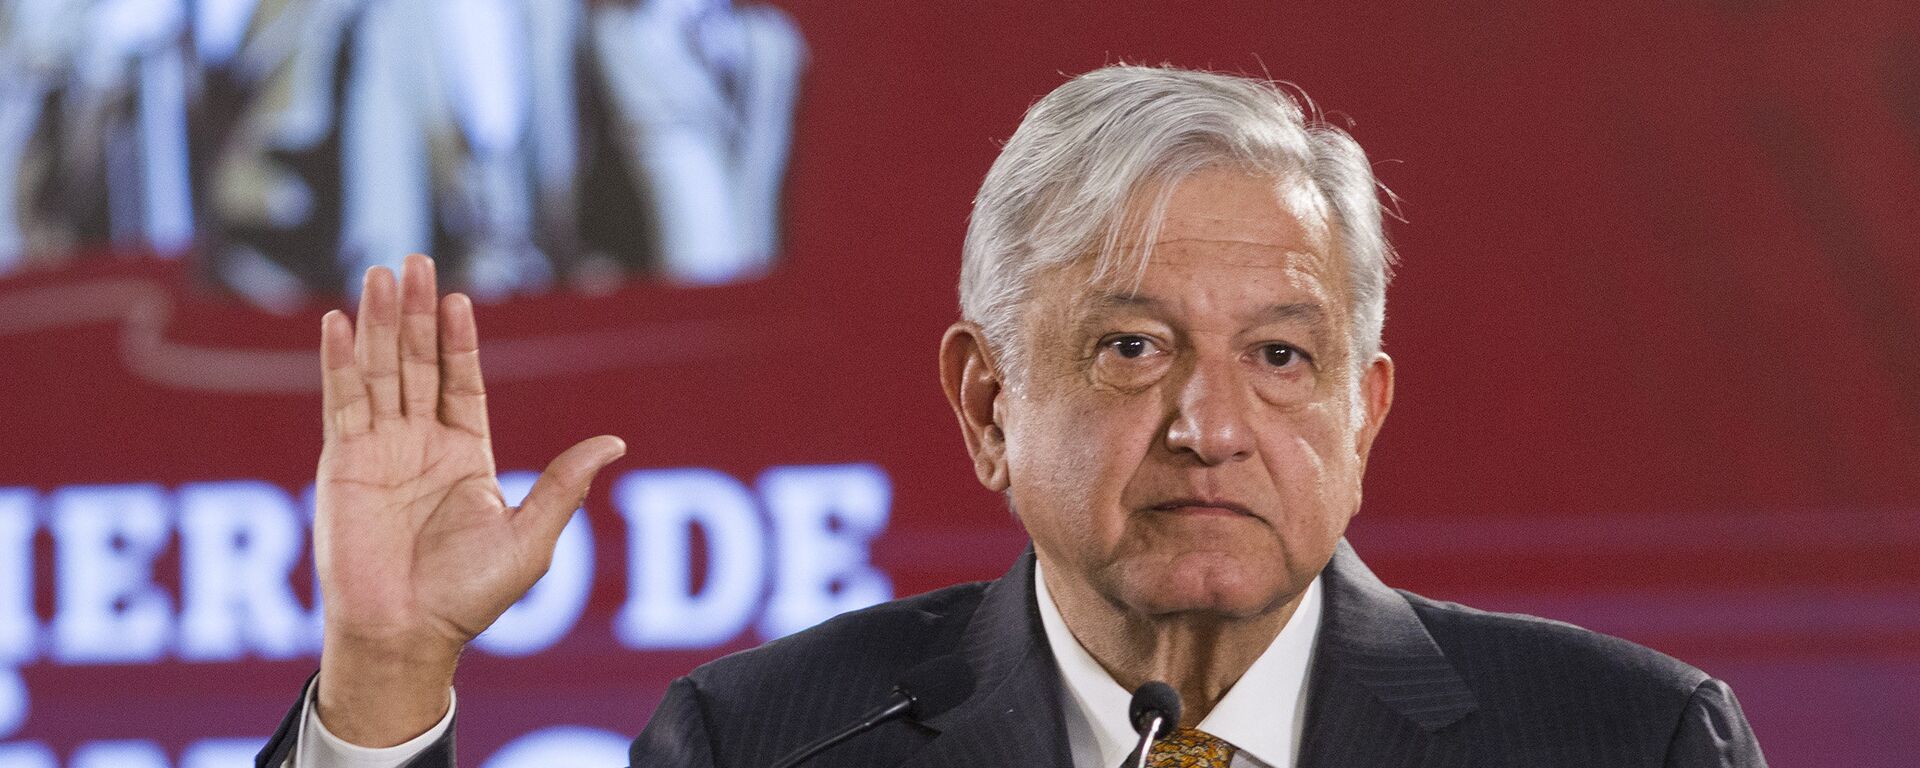 Andrés Manuel López Obrador, presidente de México  - Sputnik Mundo, 1920, 12.08.2021